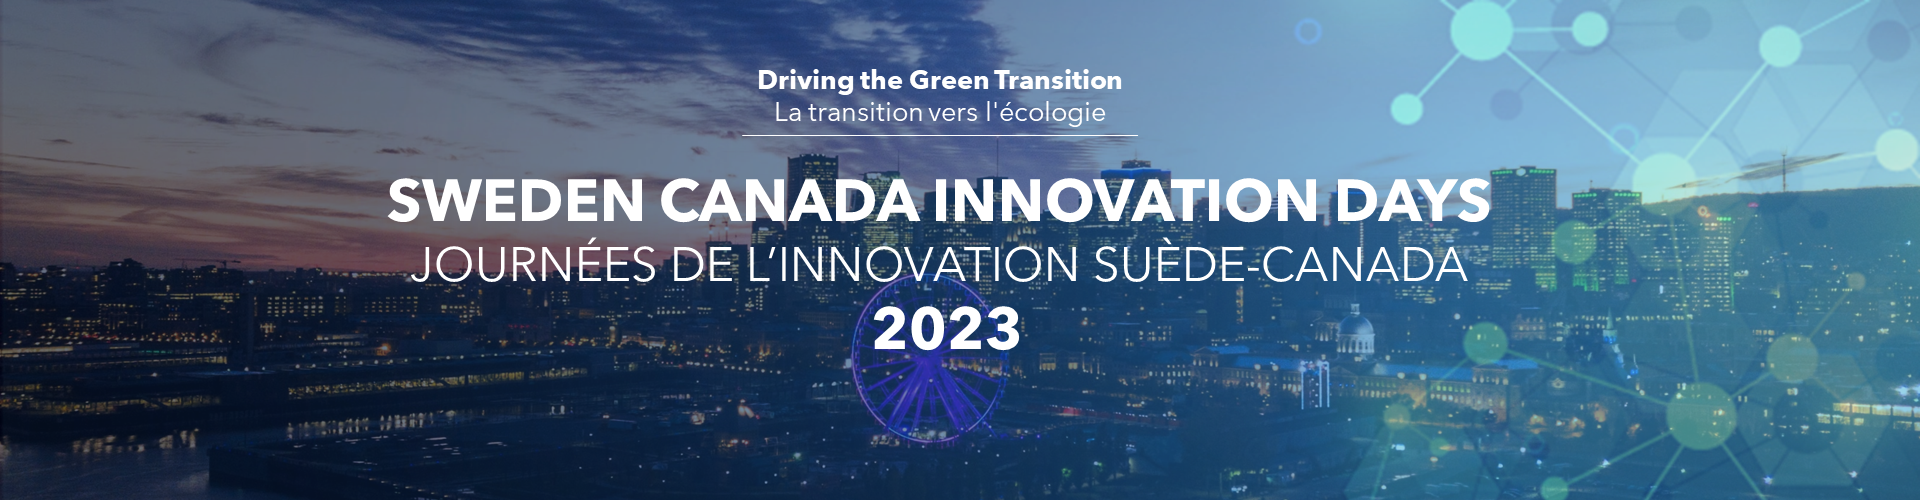 Header image for Sweden Canada Innovation Days 2023